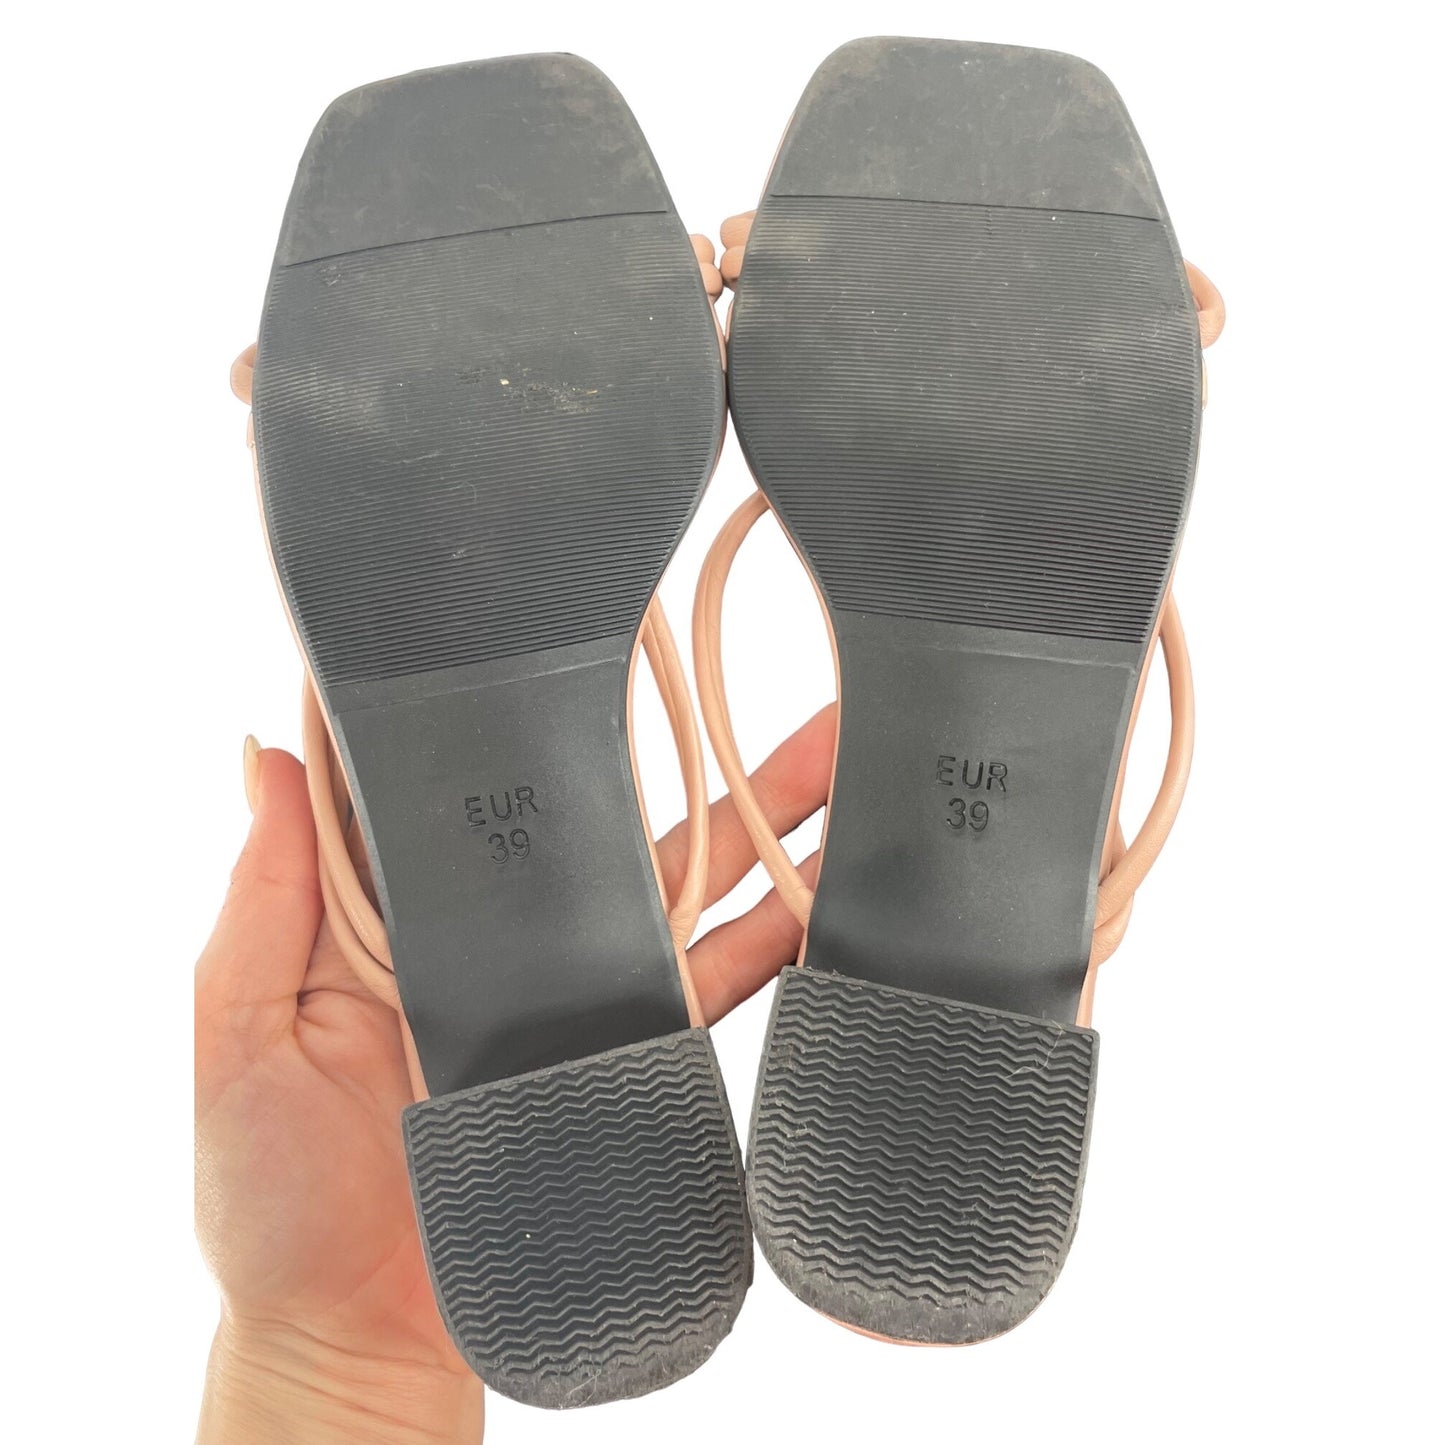 Shein Women's Size 8 Pink Sandals